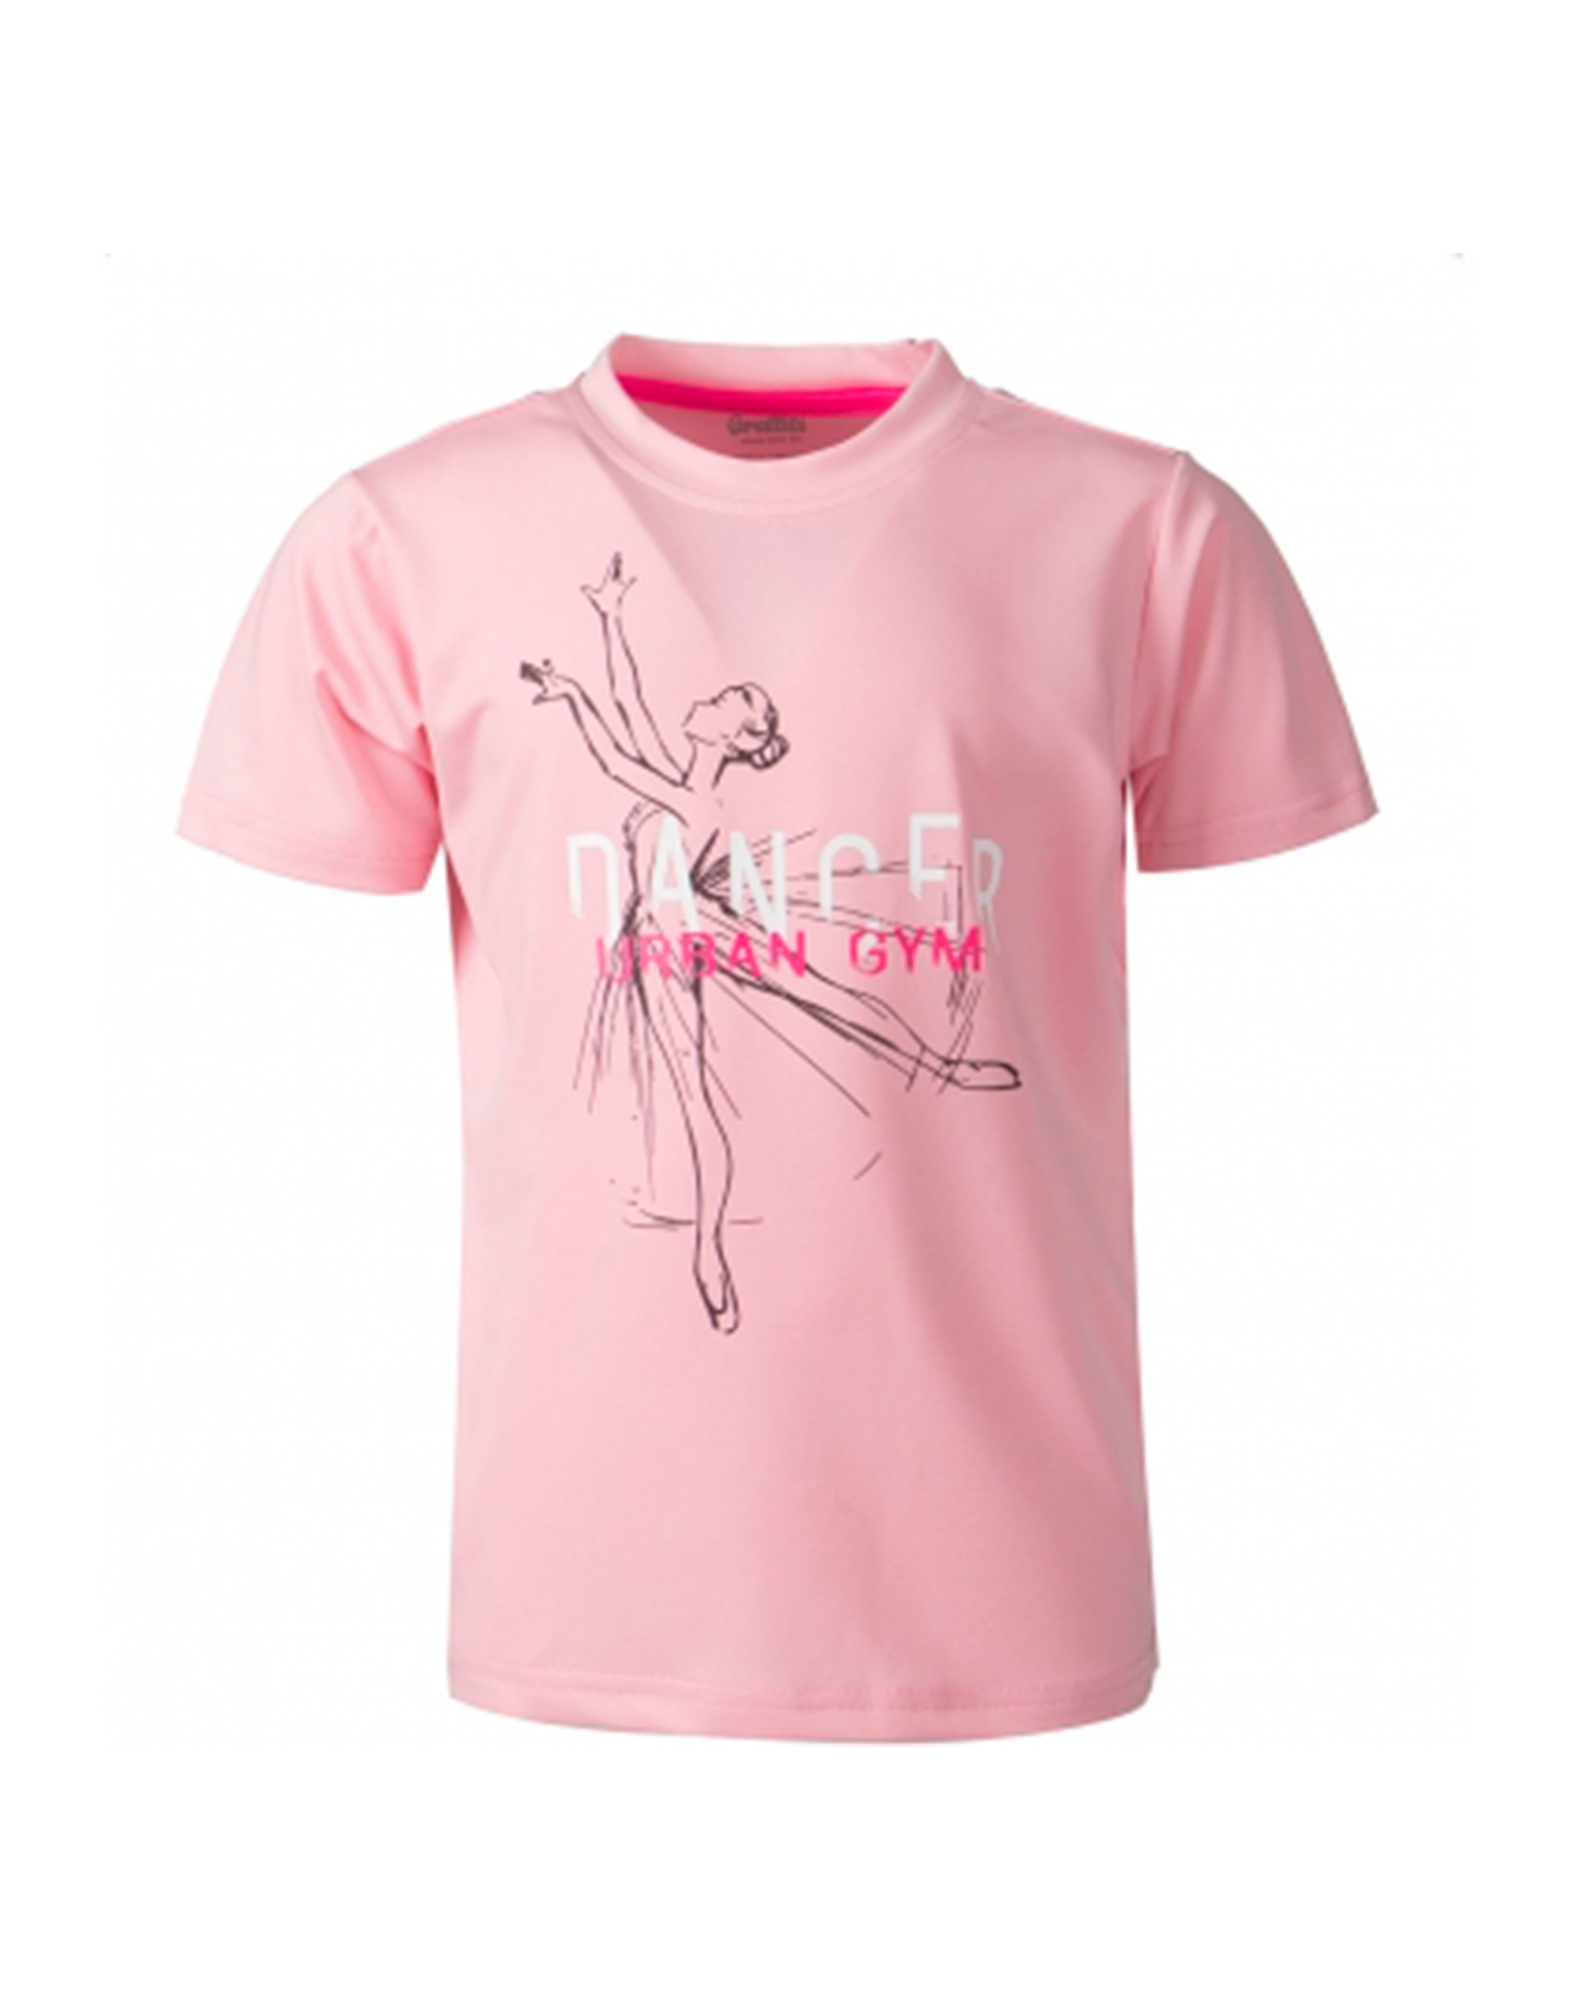 Køb Graffiti t-shirt til børn i pink